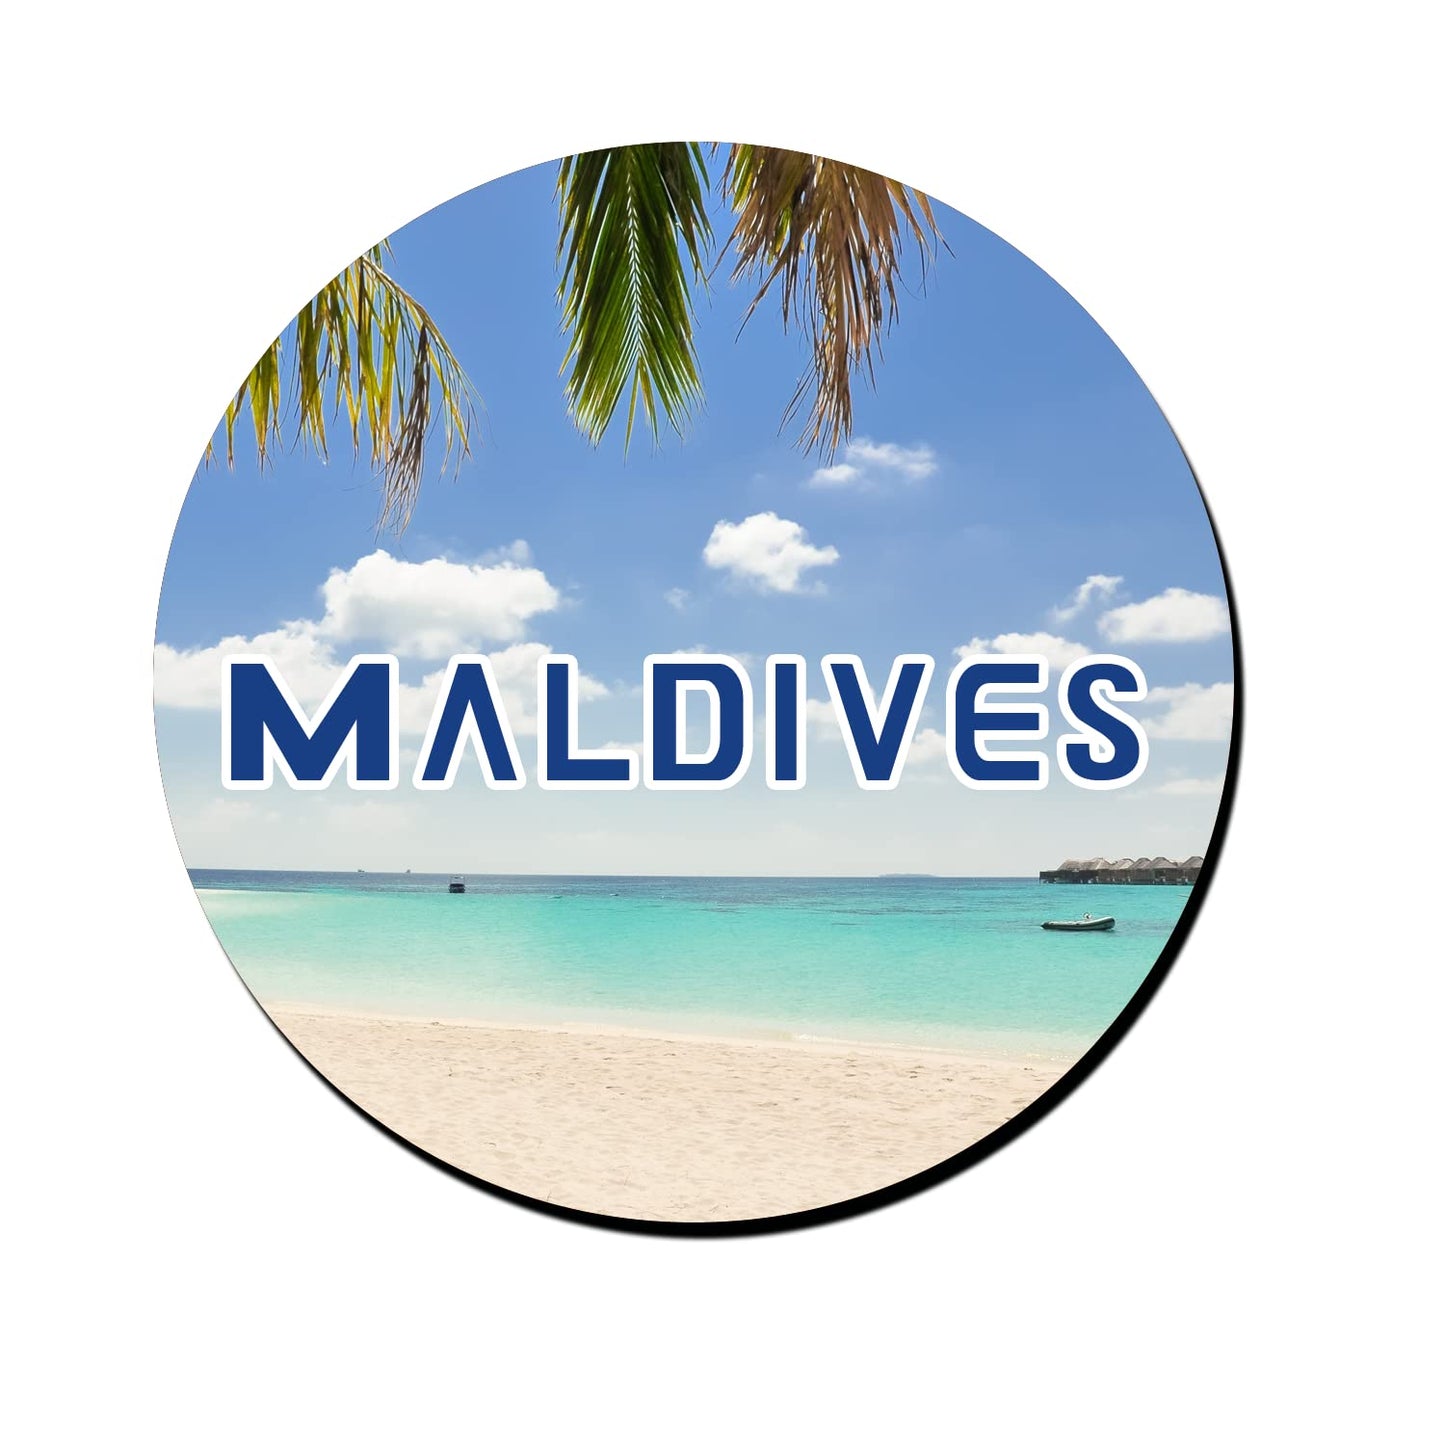 ShopTwiz Maldives Scenic Decorative Large Fridge Magnet